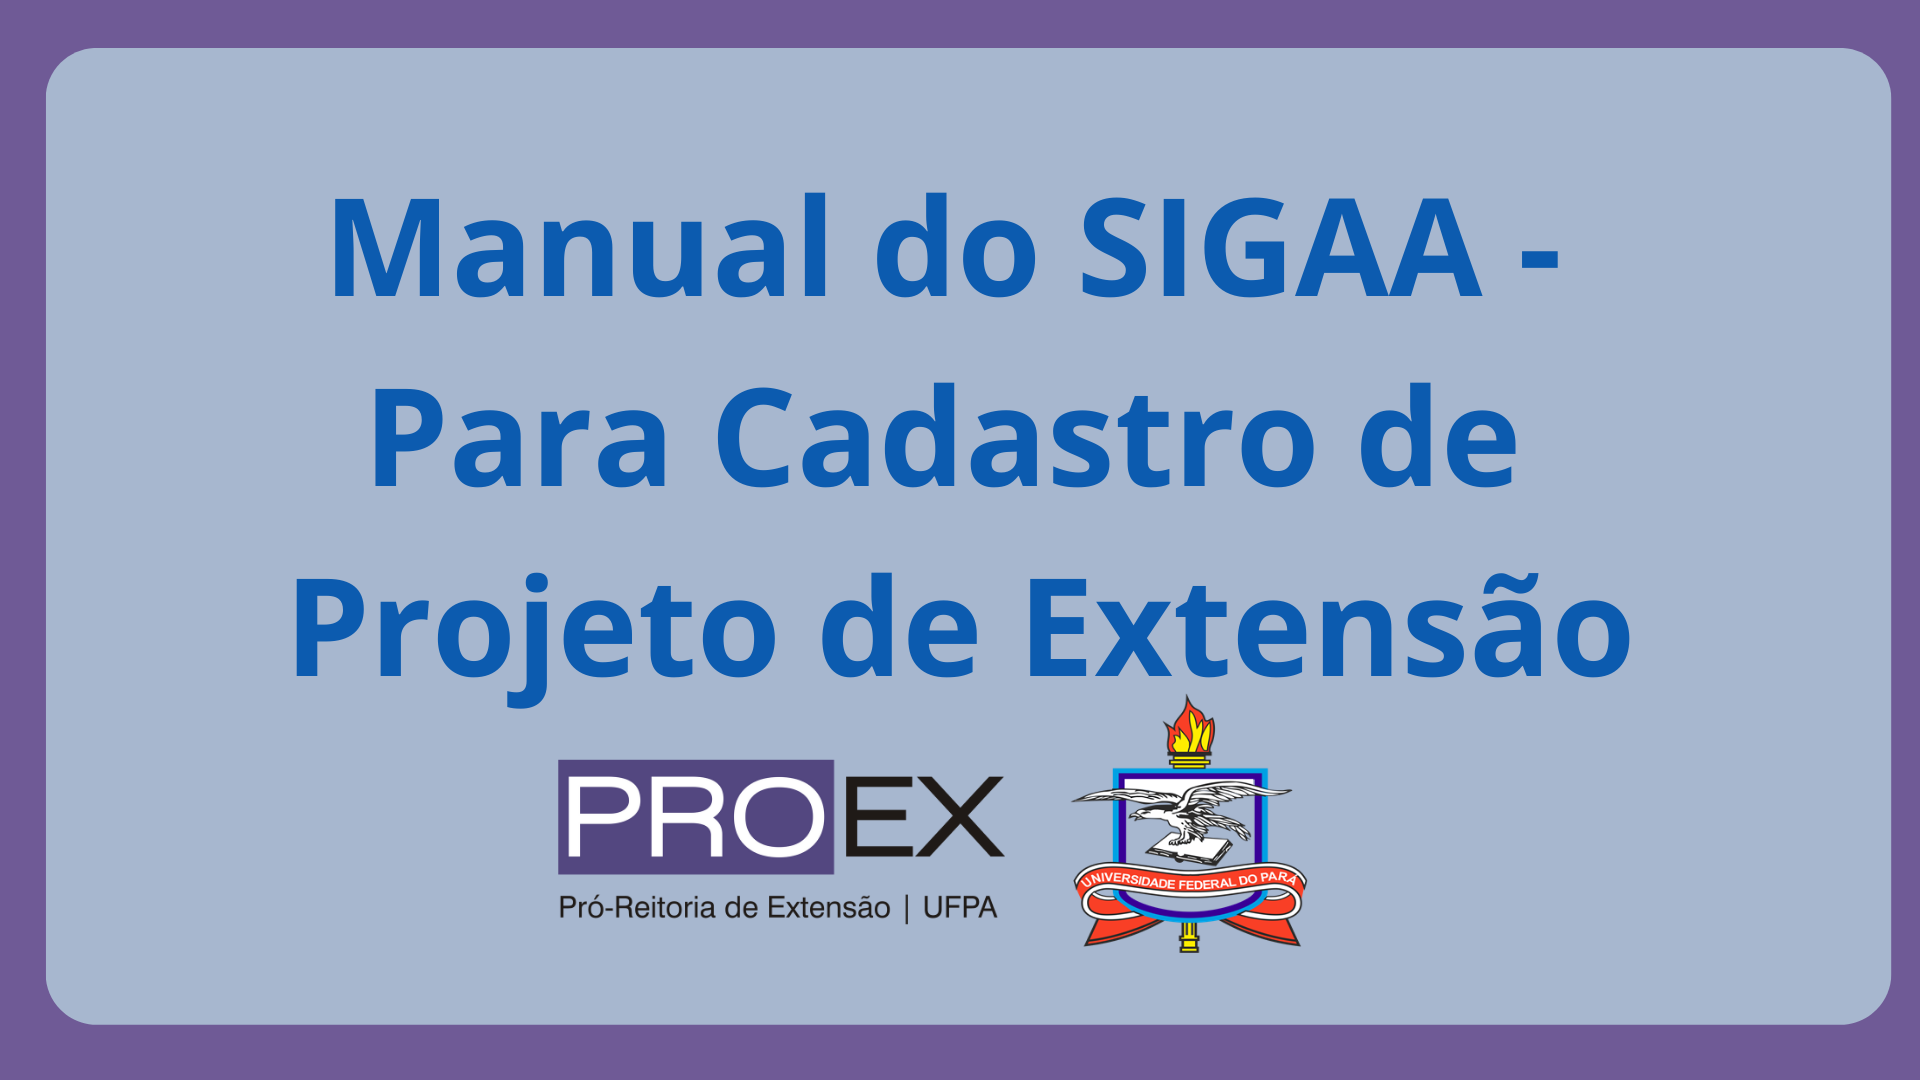 Manual do SIGAA para Cadastro de Projeto de Extensão